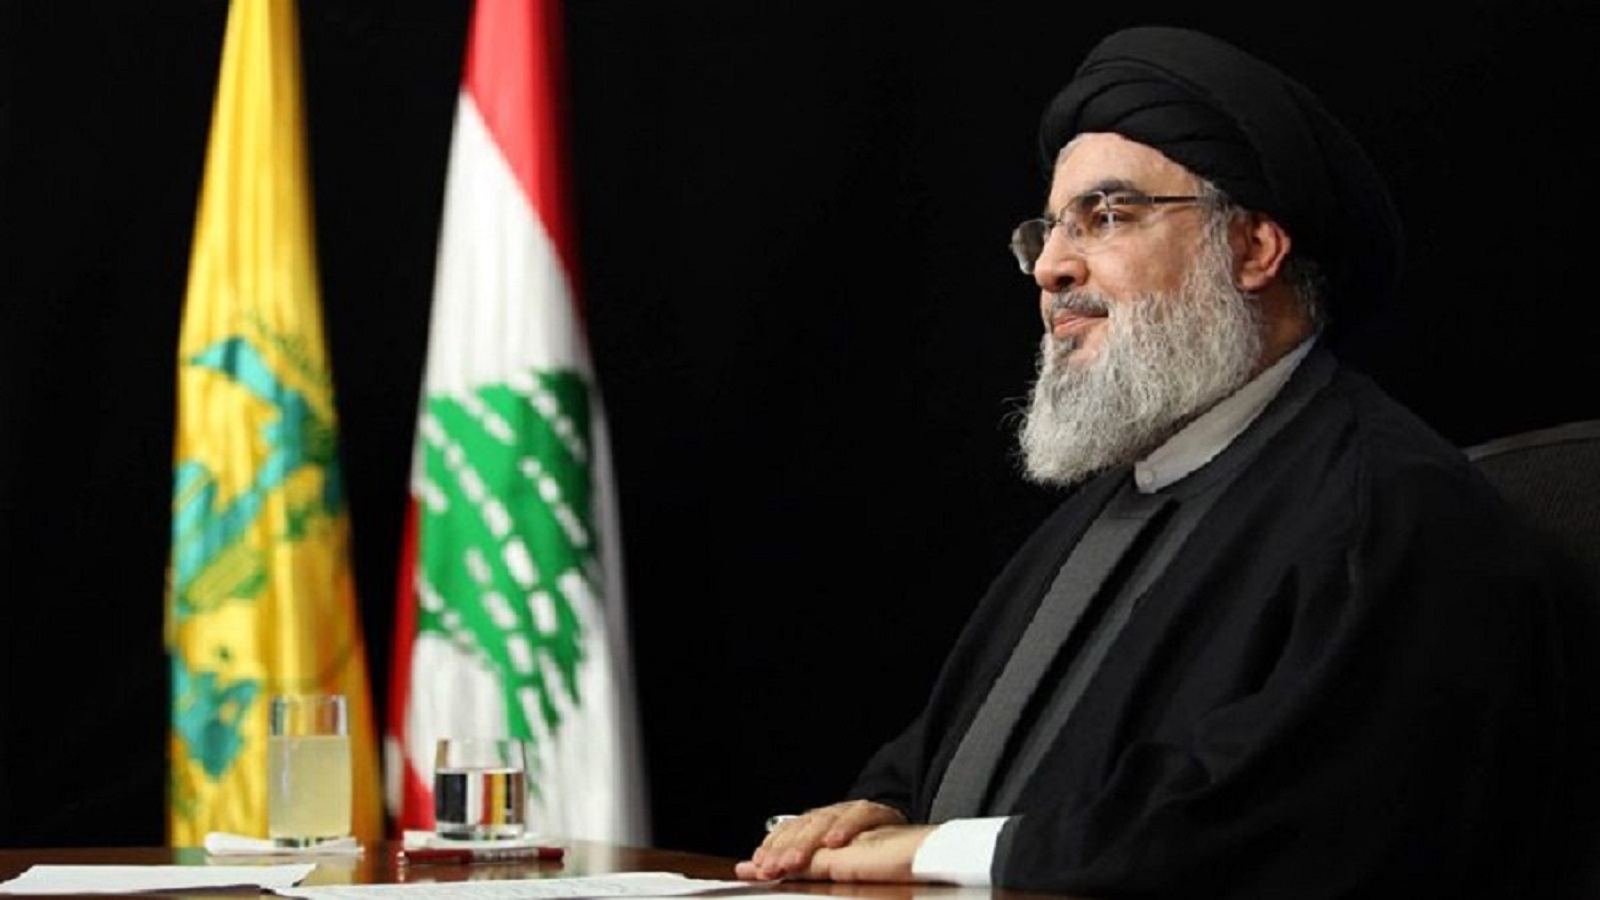 حزب الله وتصريف "انتصار" الترسيم: تسوية واستقرار أم استئثار؟